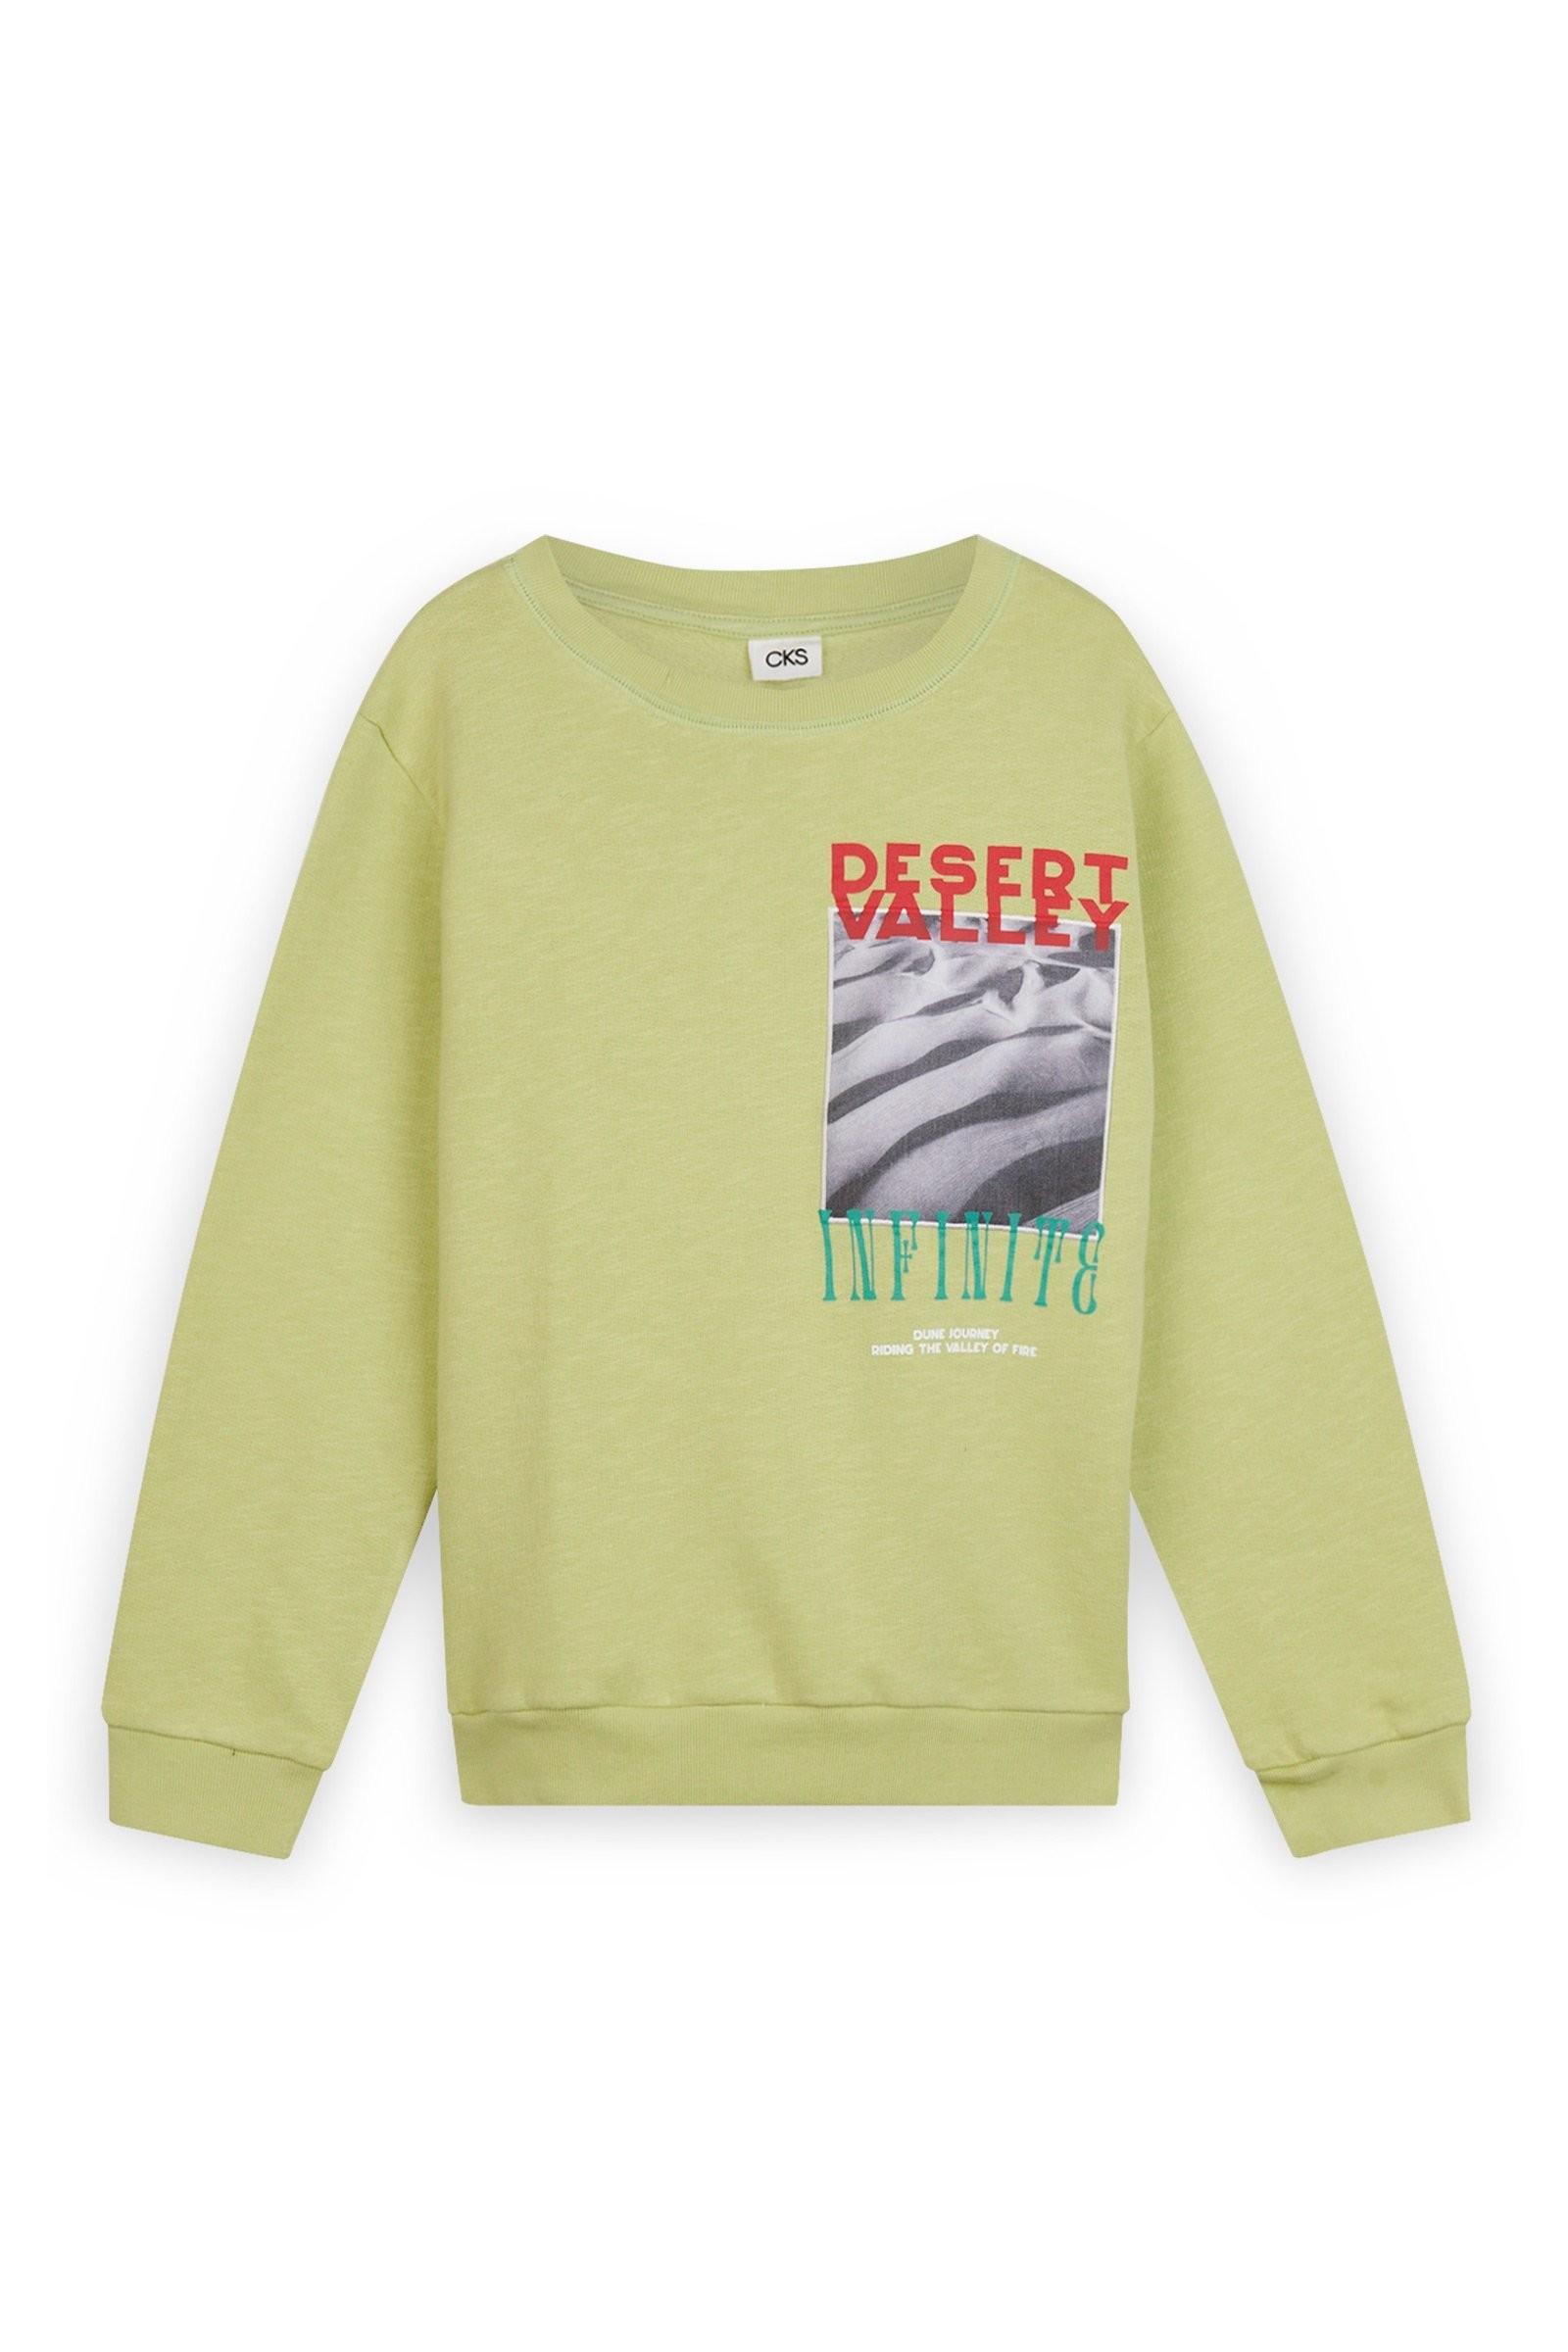 CKS Kids - BERNIELS - sweater - khaki